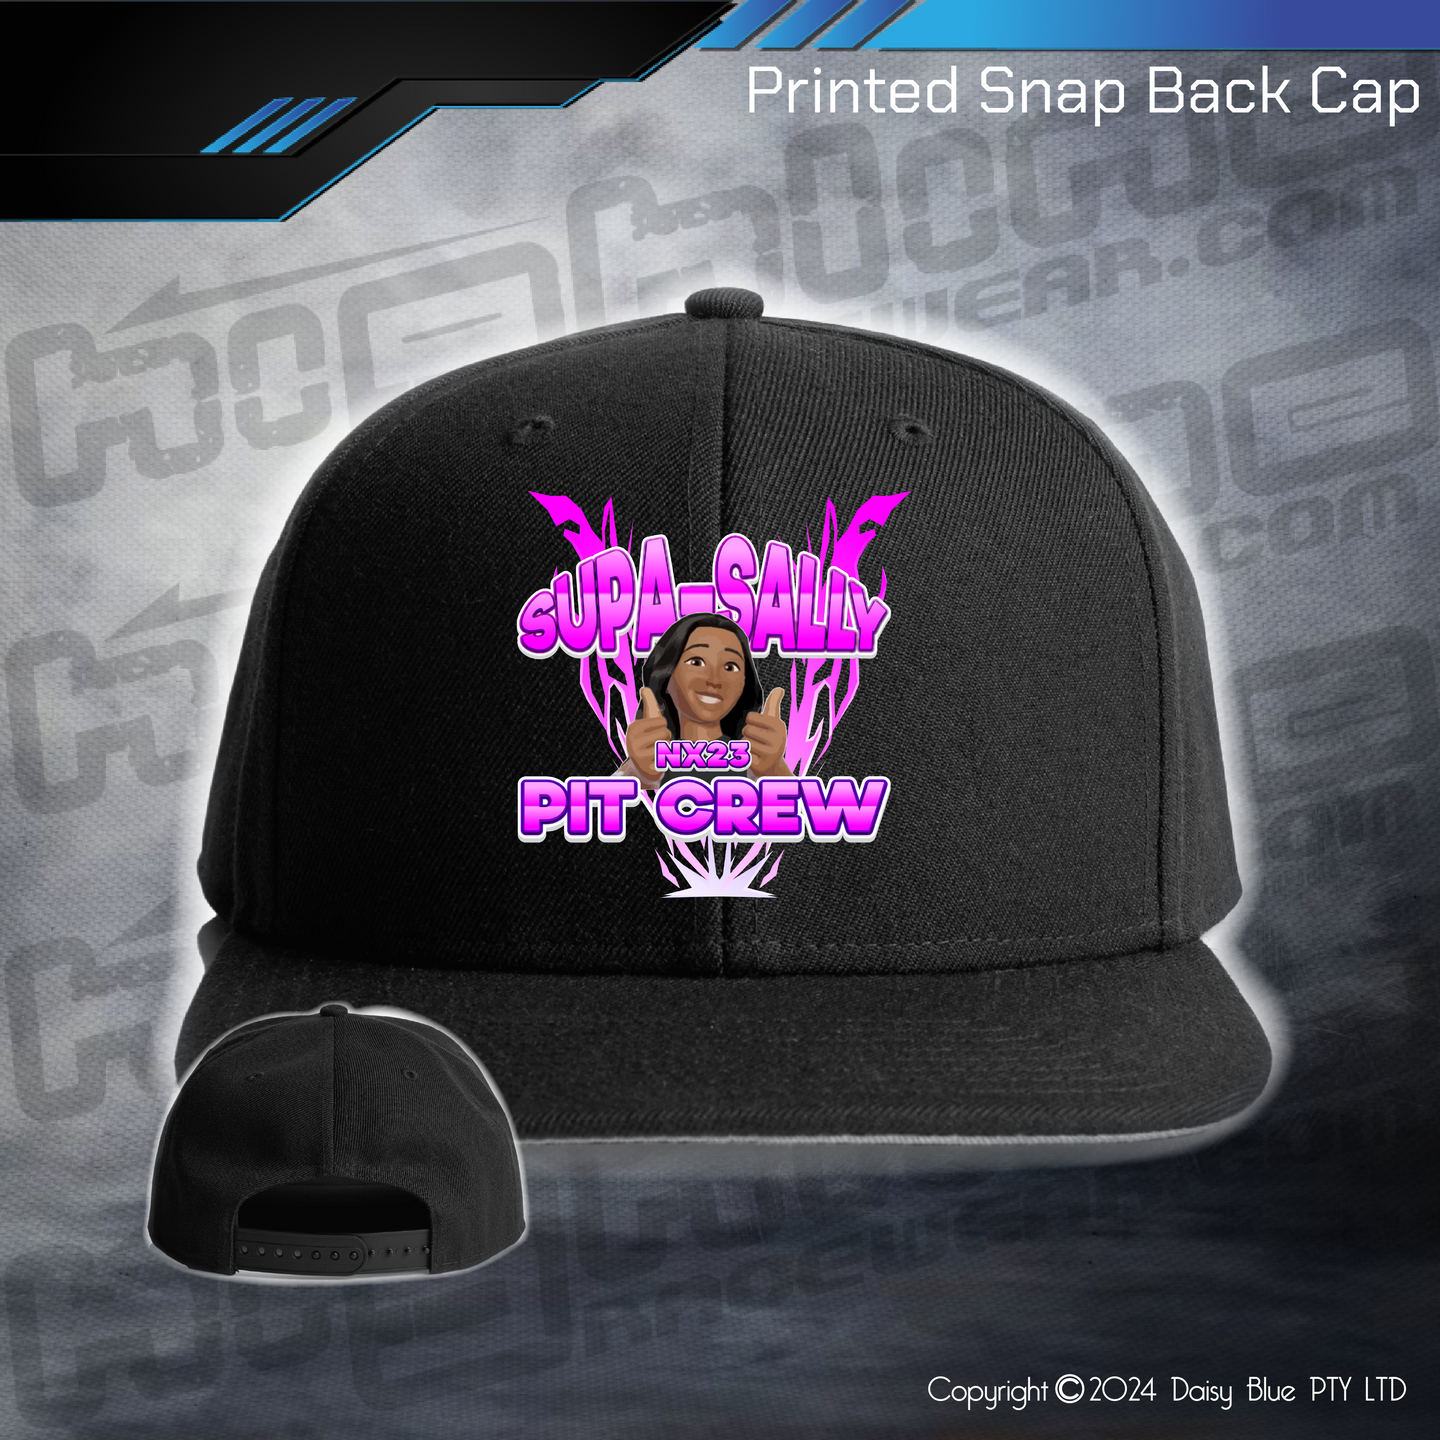 Printed Snap Back CAP - Supa-Sally